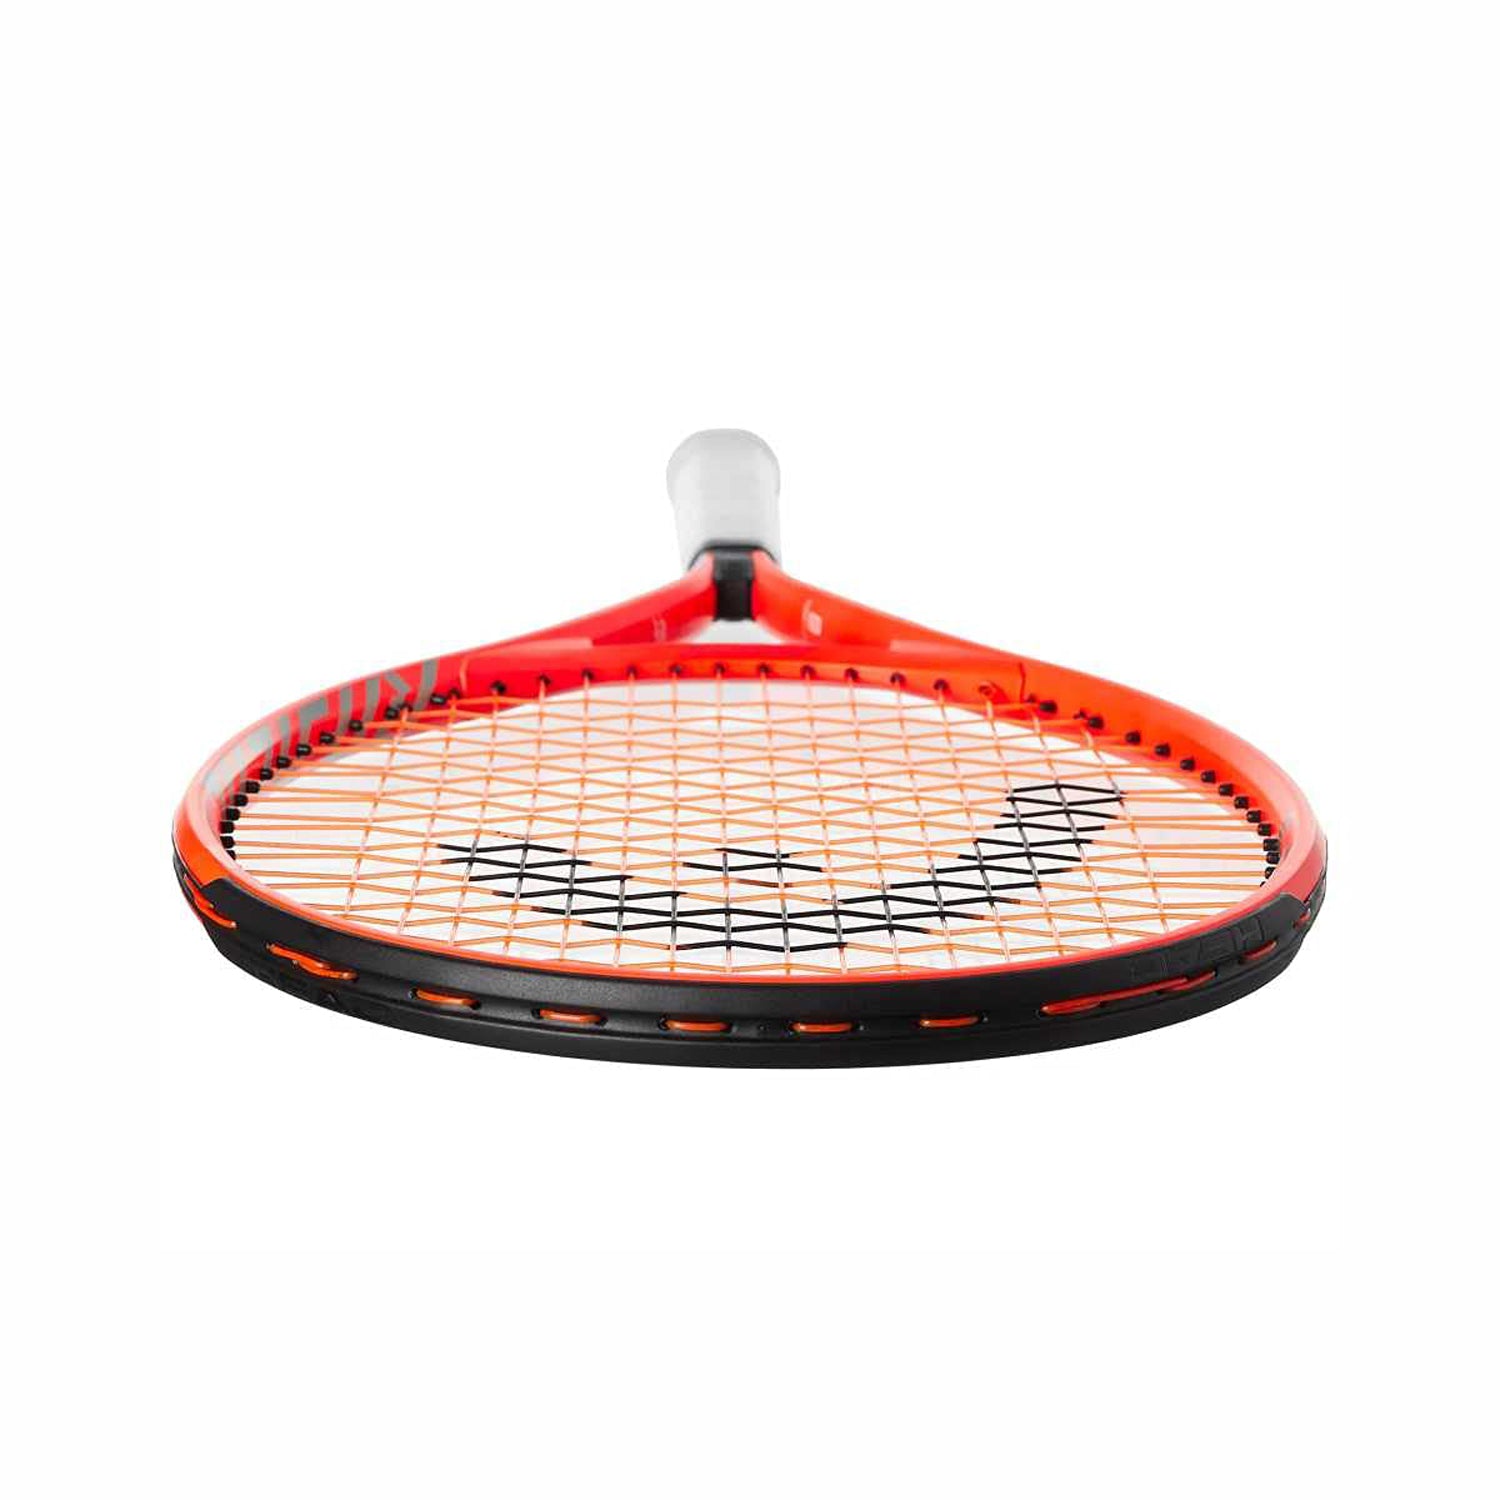 HEAD Radical 26 Strung Tennis Racquet for Juniors, 4/7-8 - Best Price online Prokicksports.com